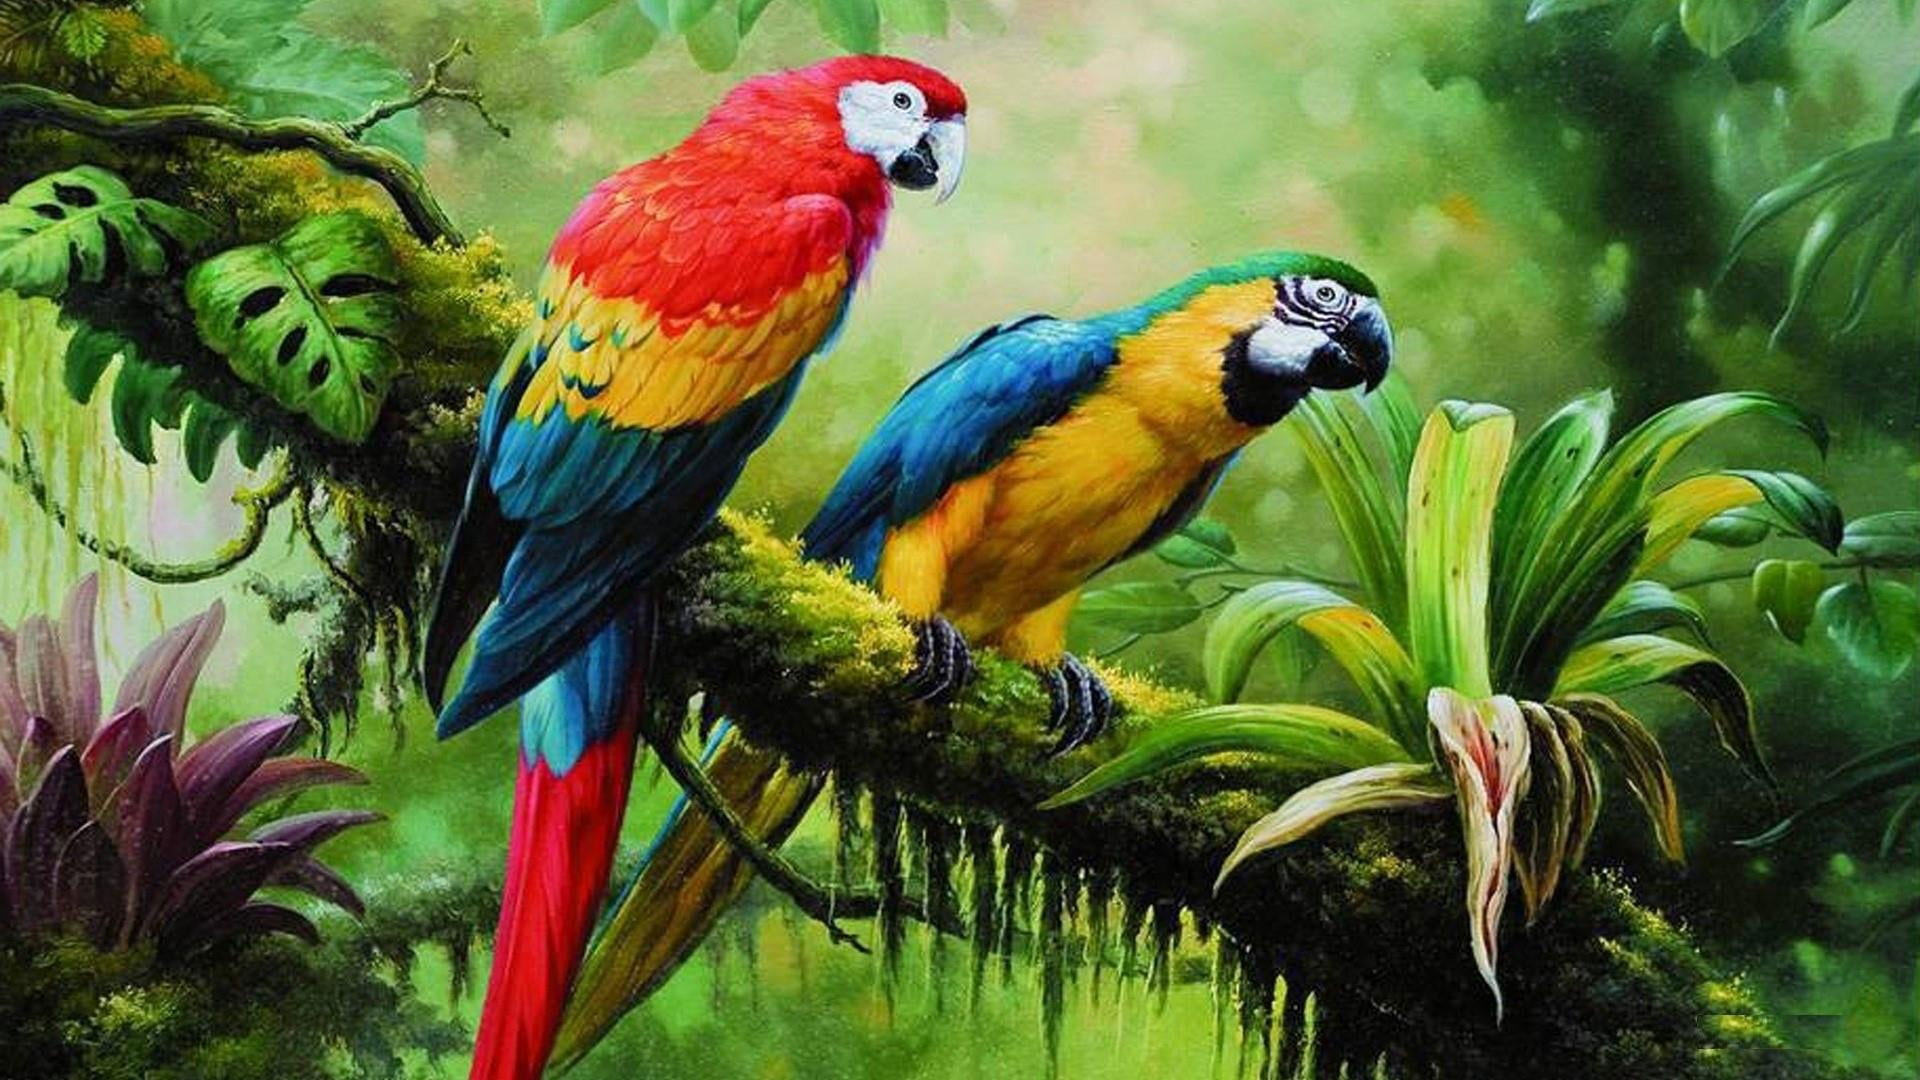 Bird Wallpaper, Parrot, Jungle, Brach, Parrots, Painting Art, Birds,  Tropical Forest - Wallpaperforu